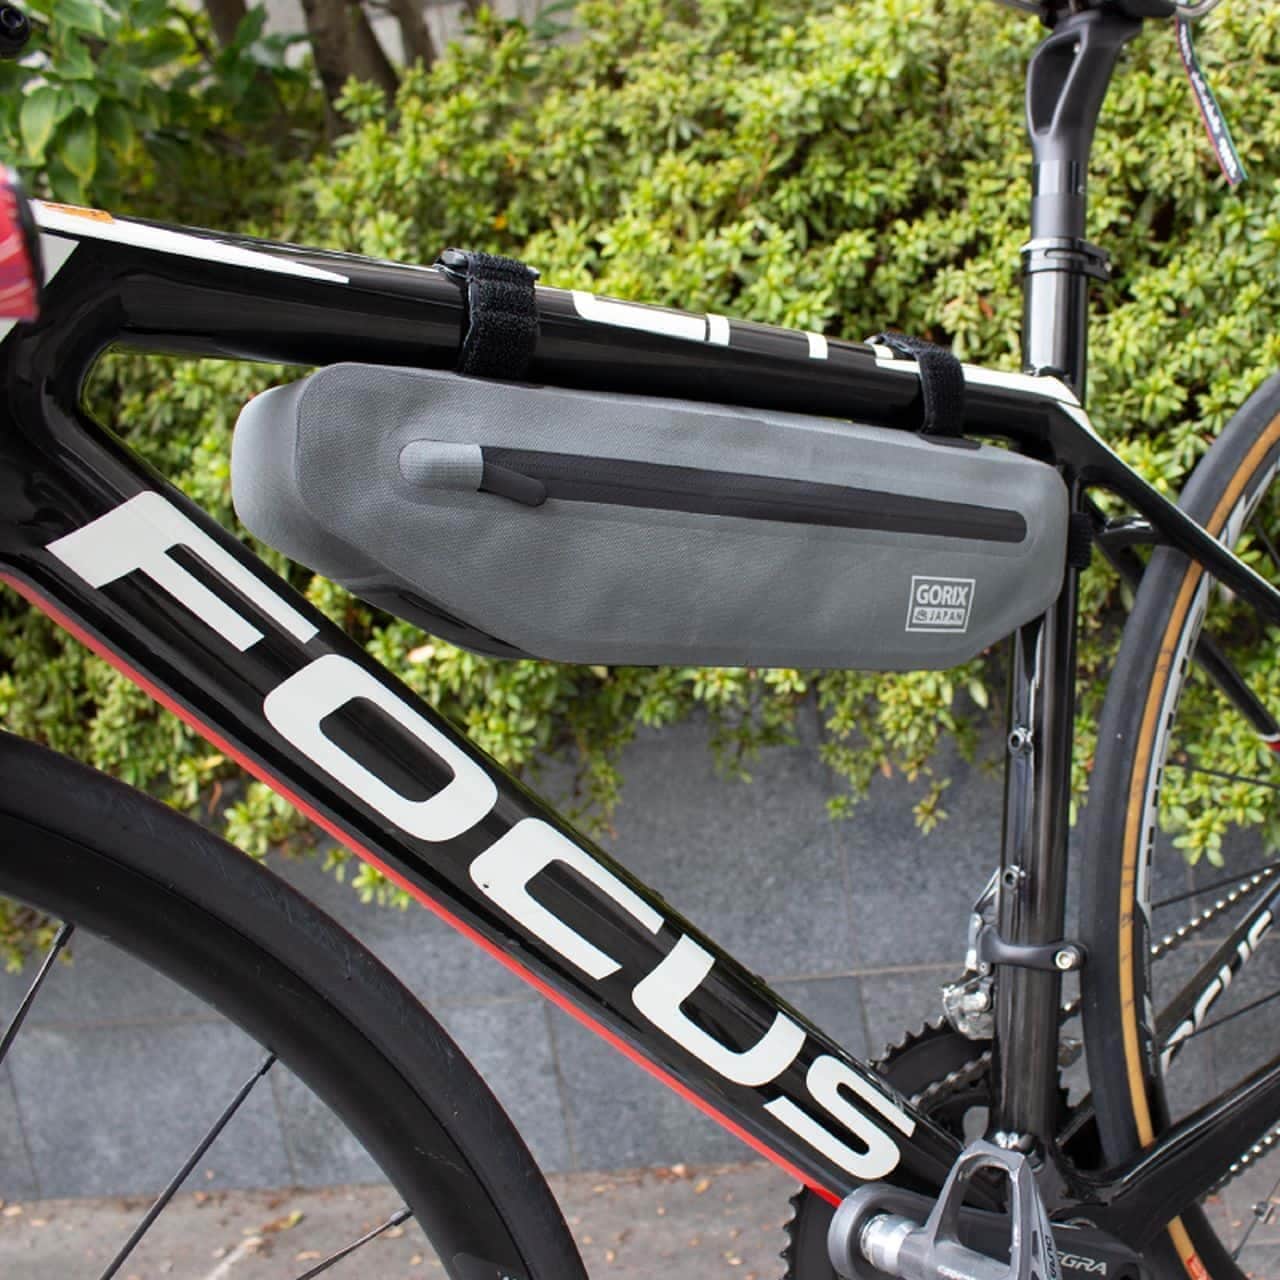 自転車用フレームバッグをGORIXが販売開始 ― 幅5.2cmのスリムデザインでペダリングを邪魔しない